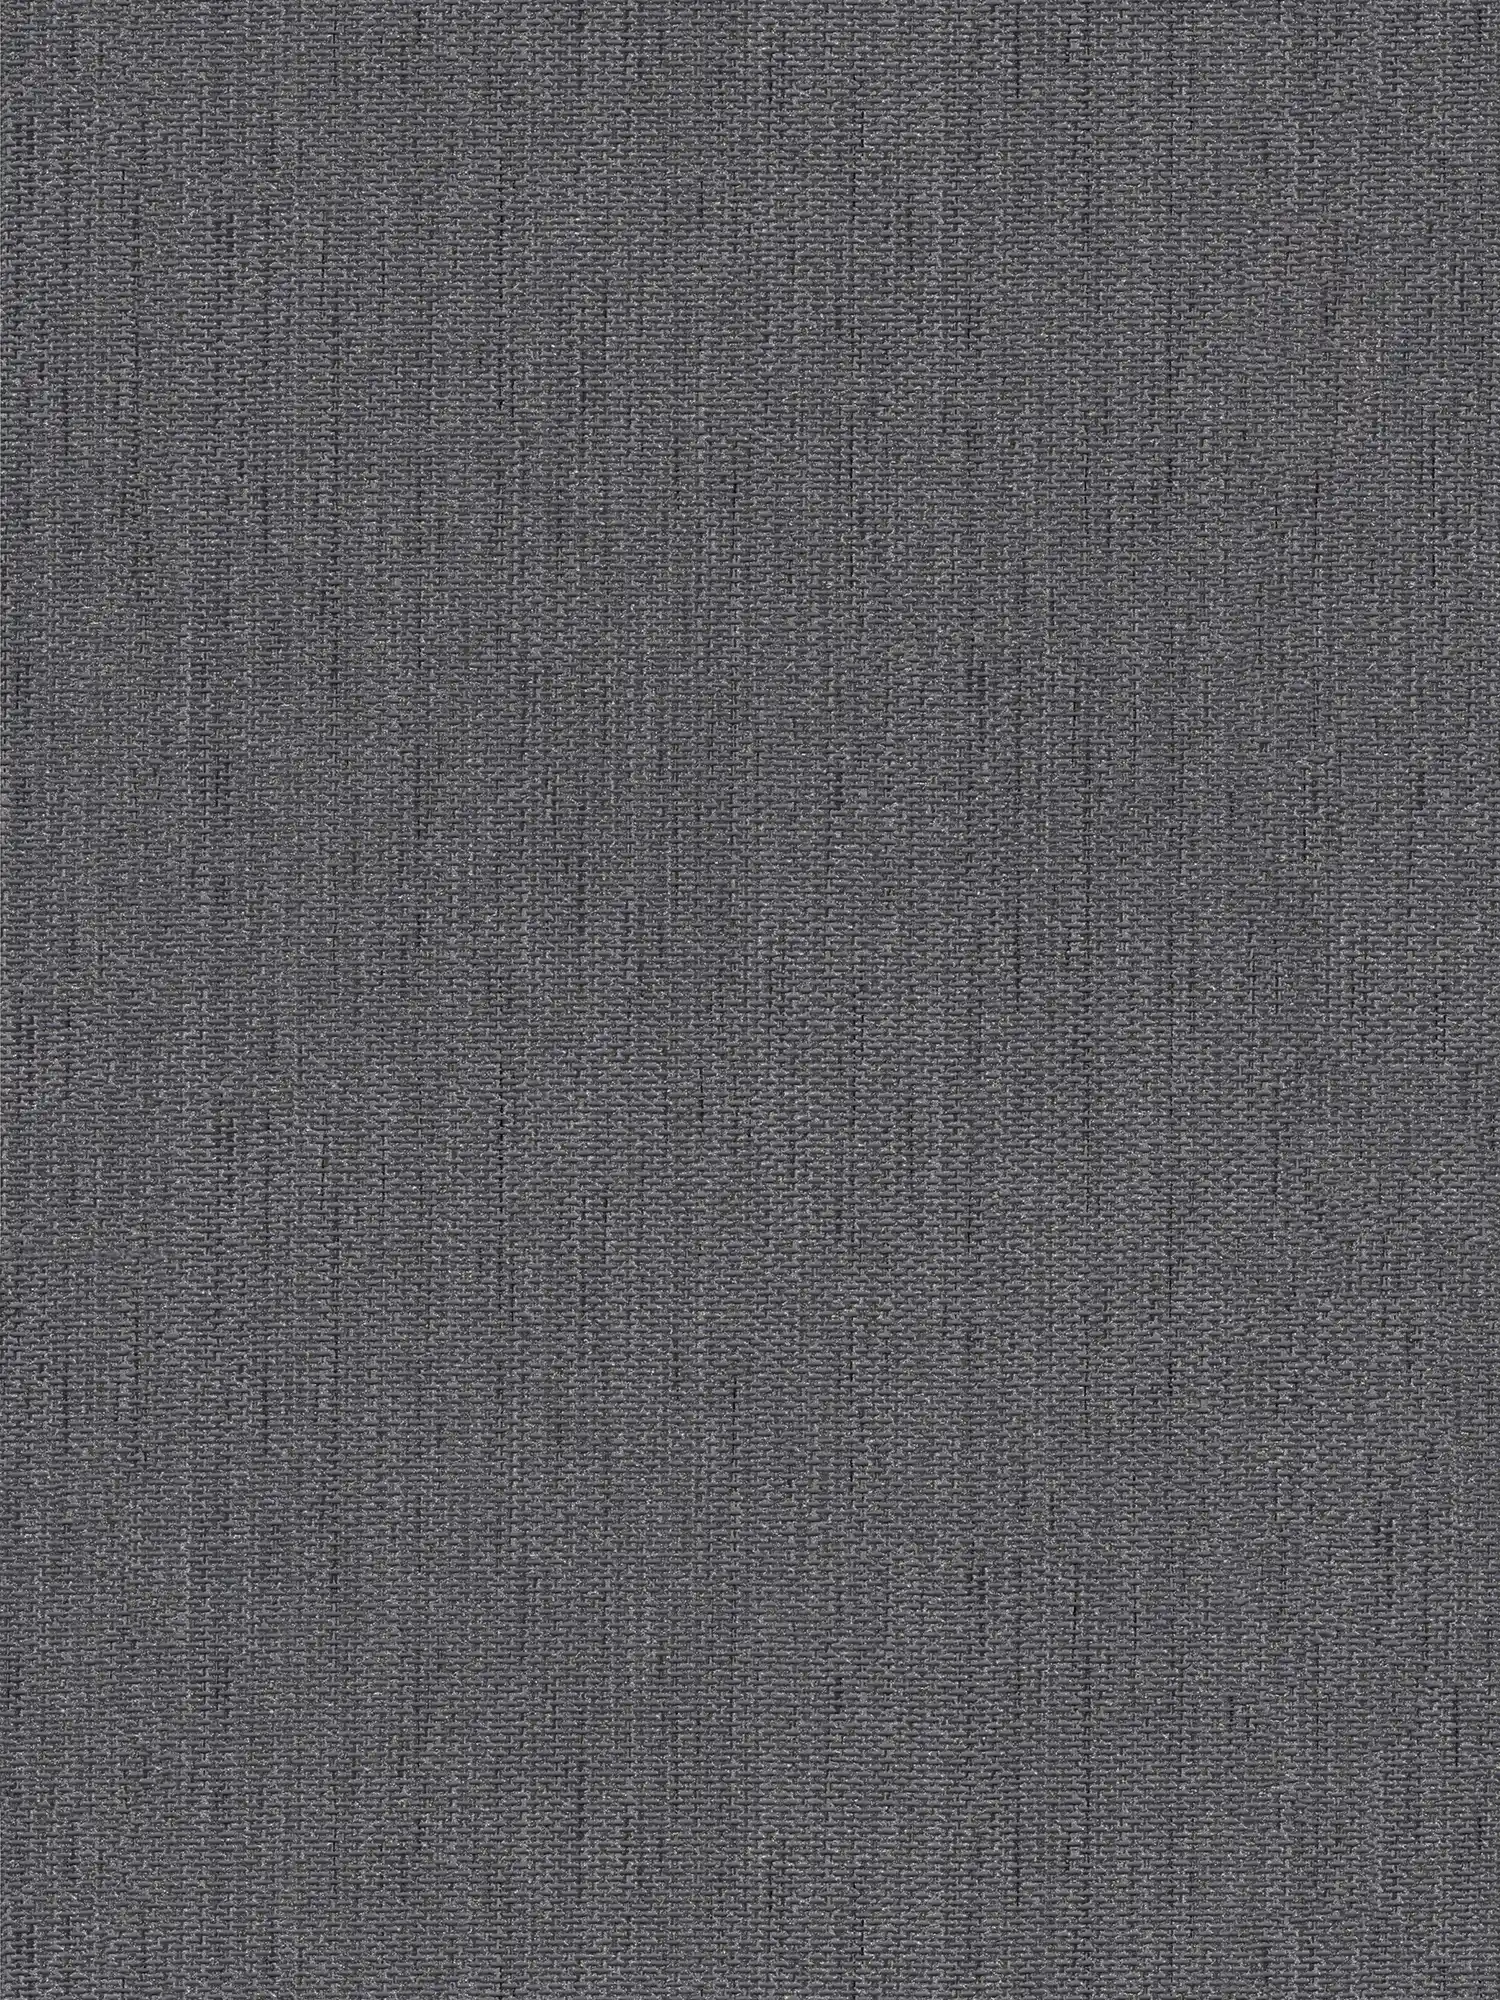 Carta da parati in lino con struttura tessile - grigio, nero
